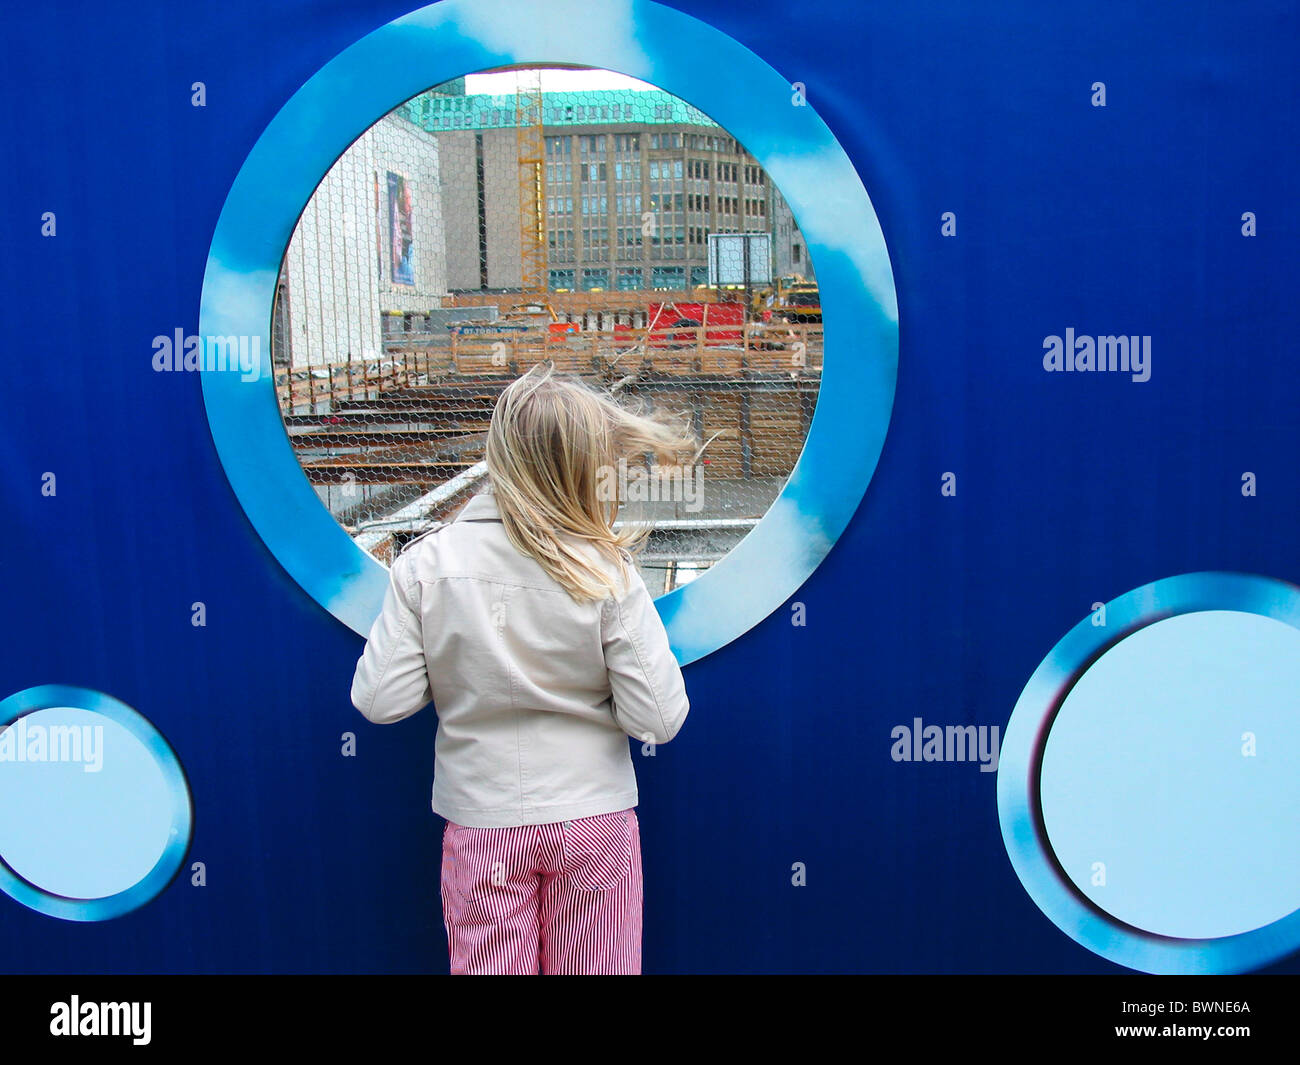 Amburgo Germania Europa curiosità edificio ragazza bionda sito sito in costruzione foro muro wachting chil indiscreti Foto Stock